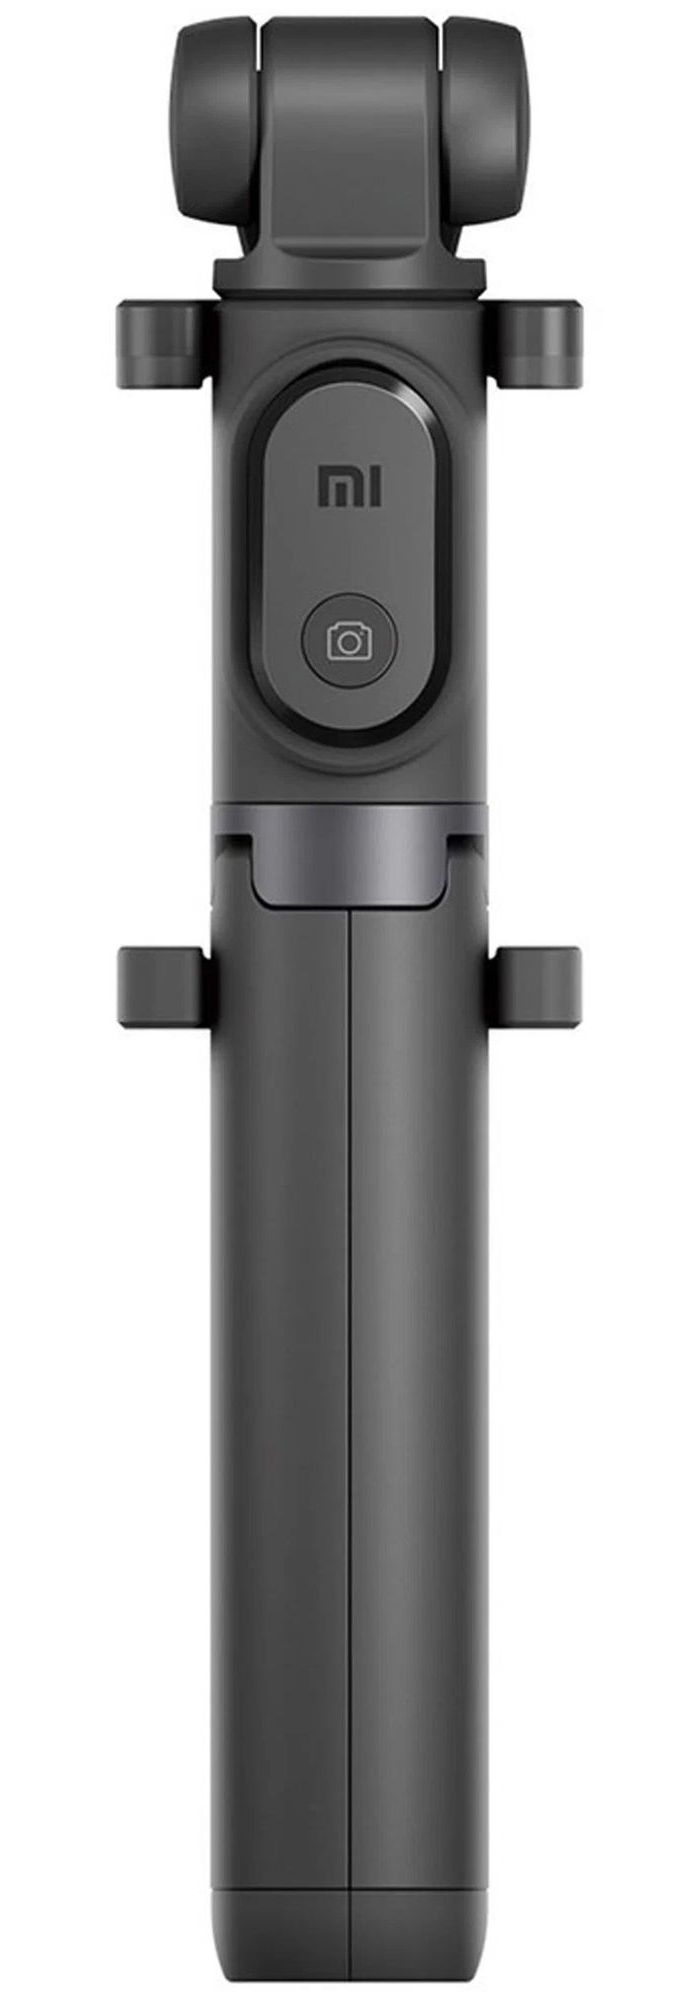 монопод штатив mi selfie stick tripod black xmzpg01ym fba4070us Монопод Xiaomi Mi Selfie Stick Tripod Black (XMZPG01YM)